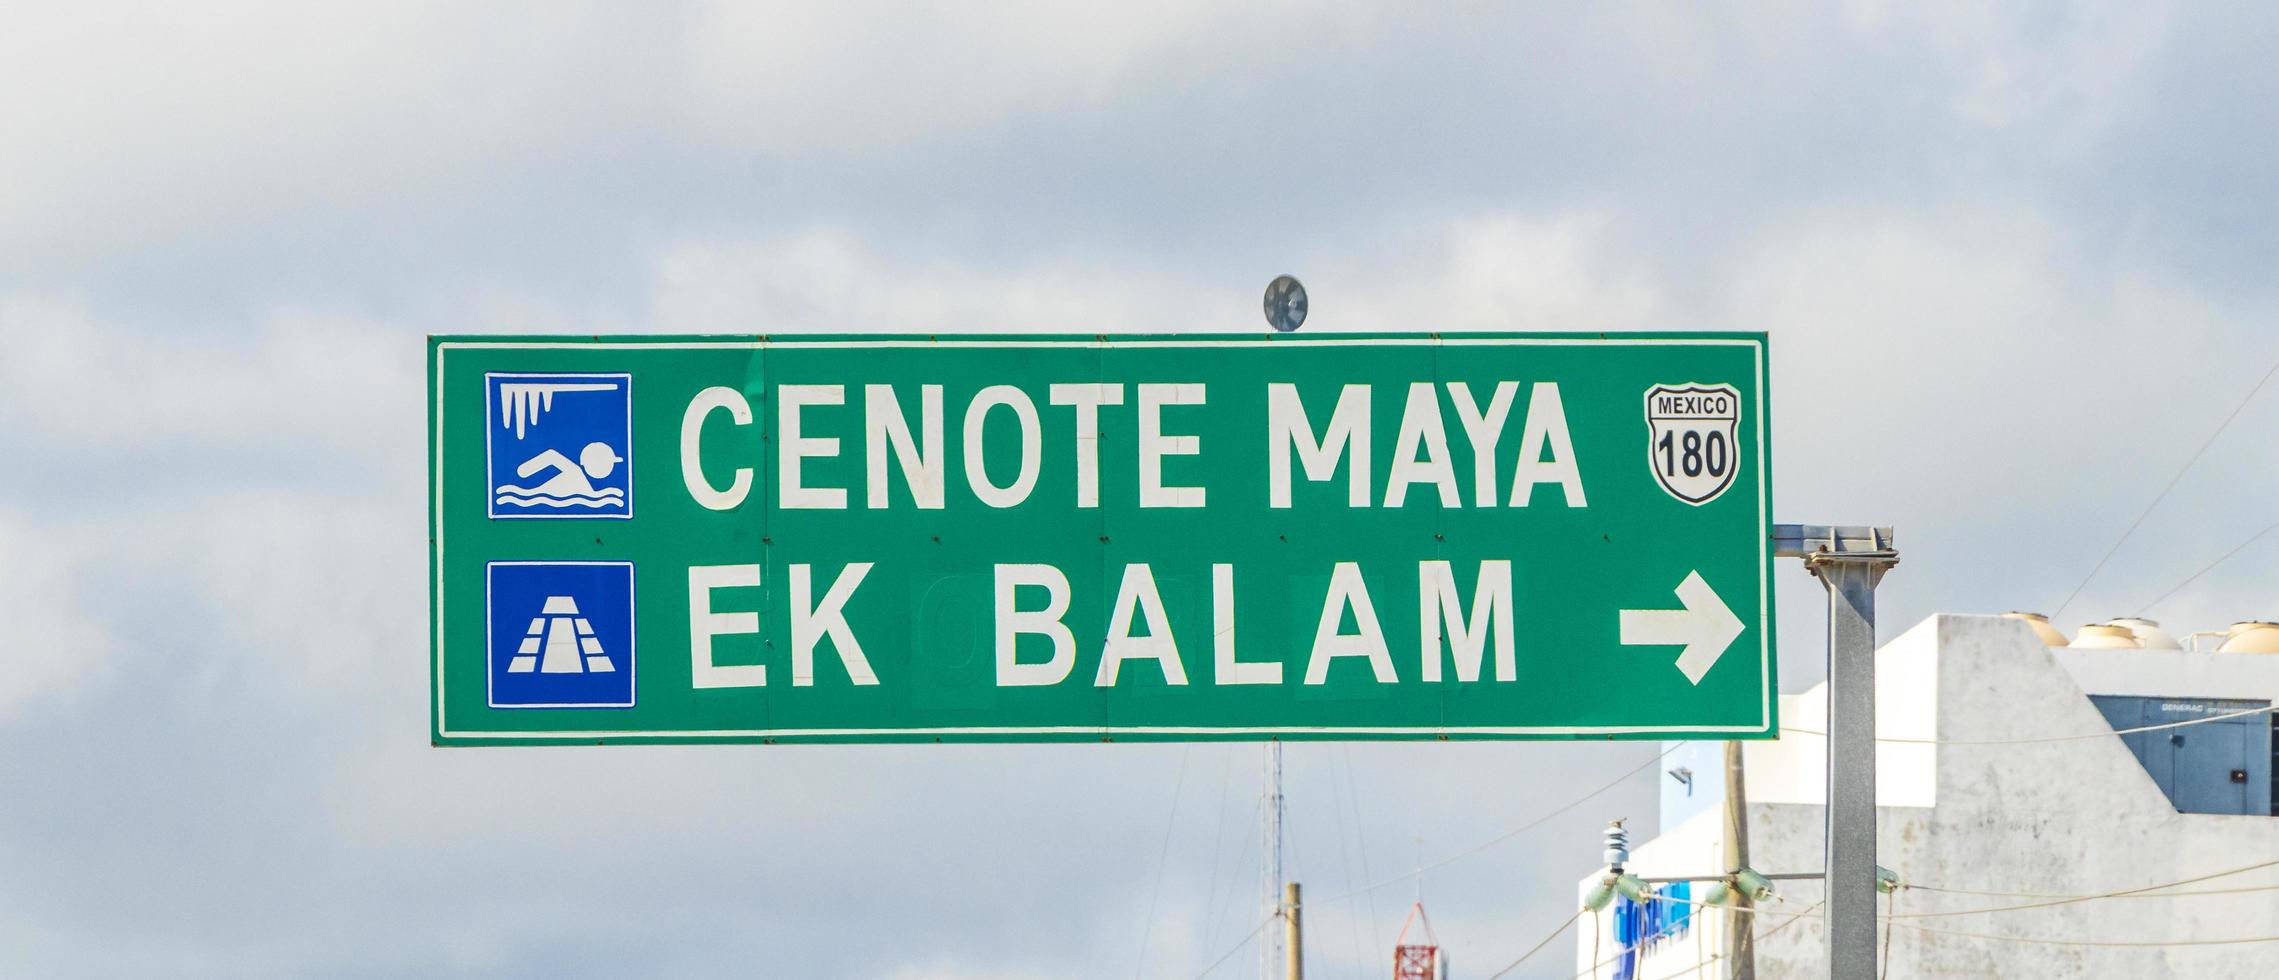 tulum quintana roo mexico 2022 panneau routier pour cenote maya ek balam à tulum mexico. photo